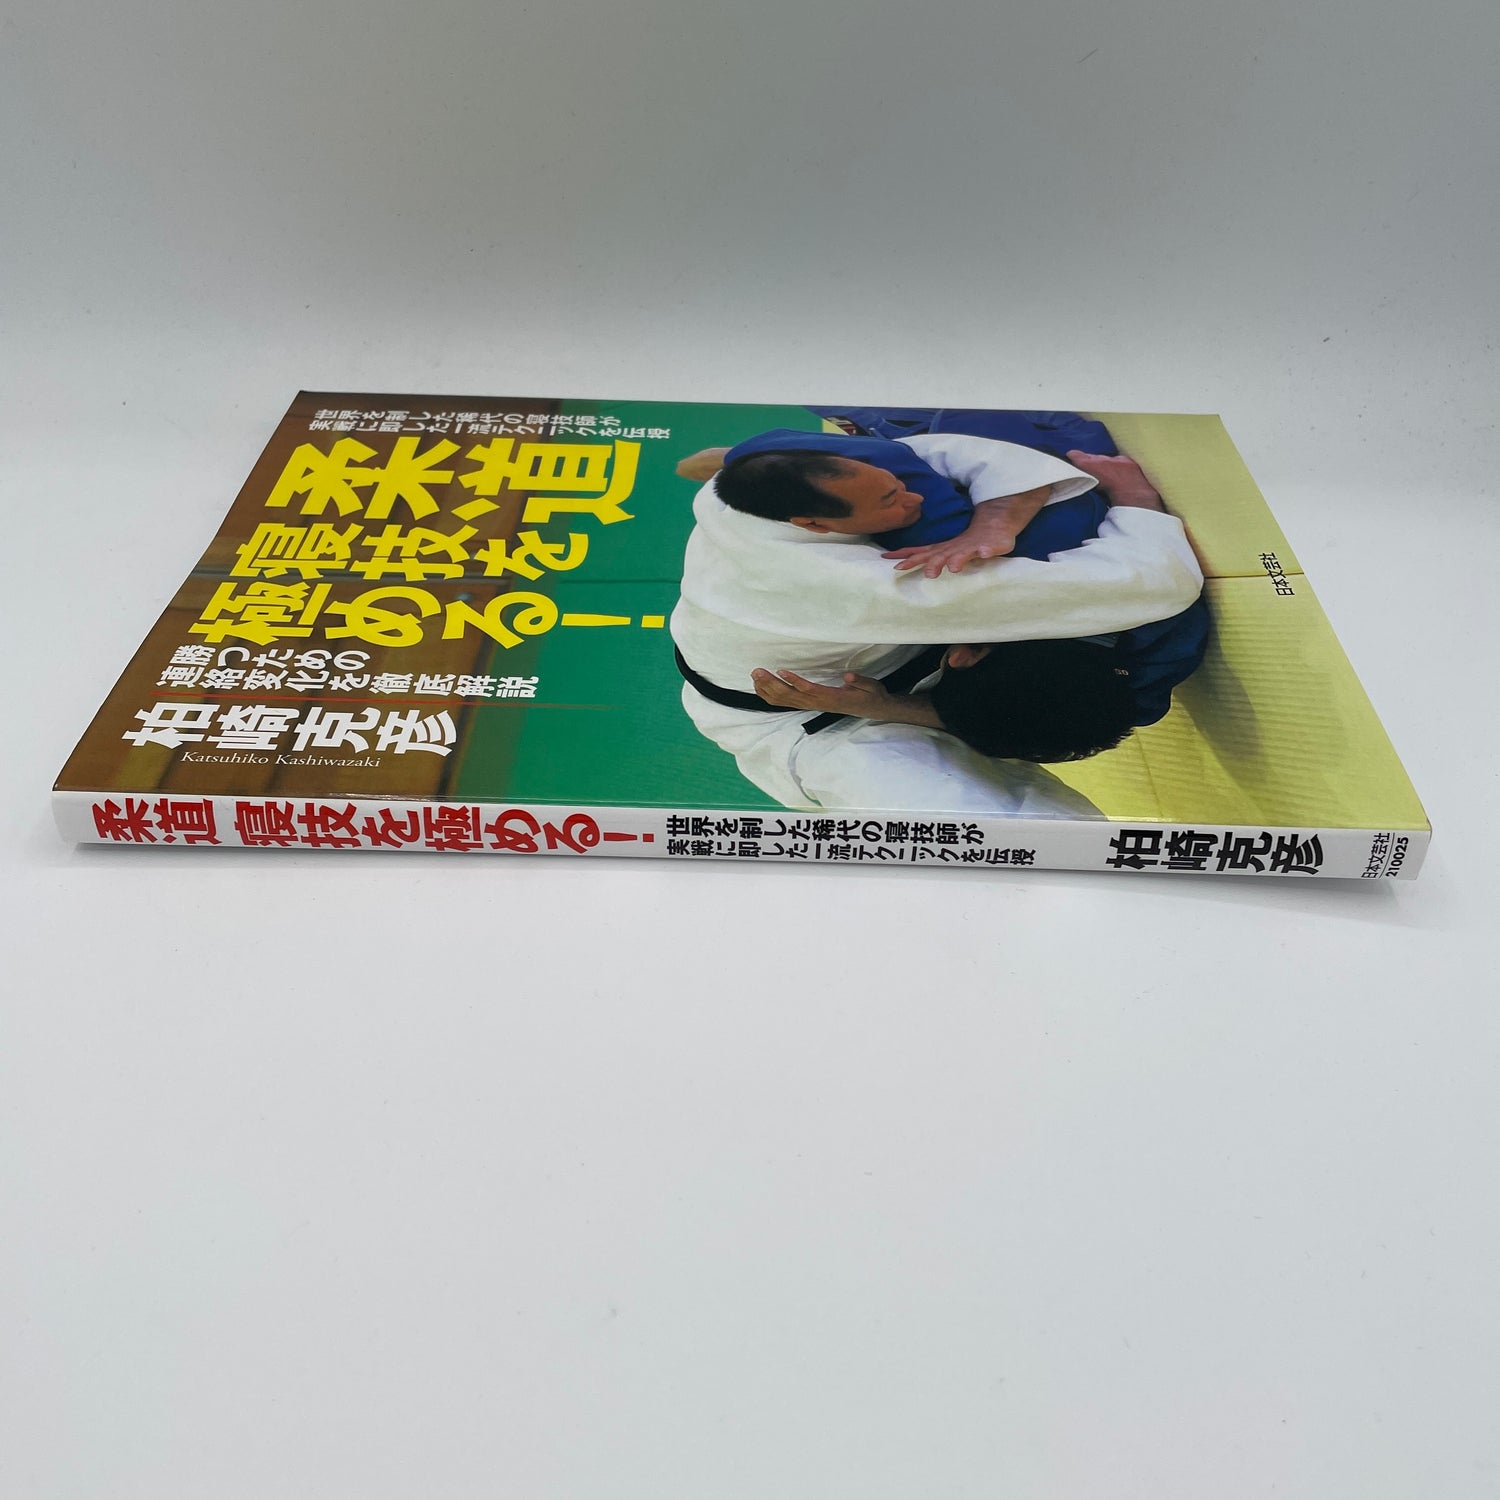 Libro Maestro de lucha terrestre de judo por Katsuhiko Kashiwazaki